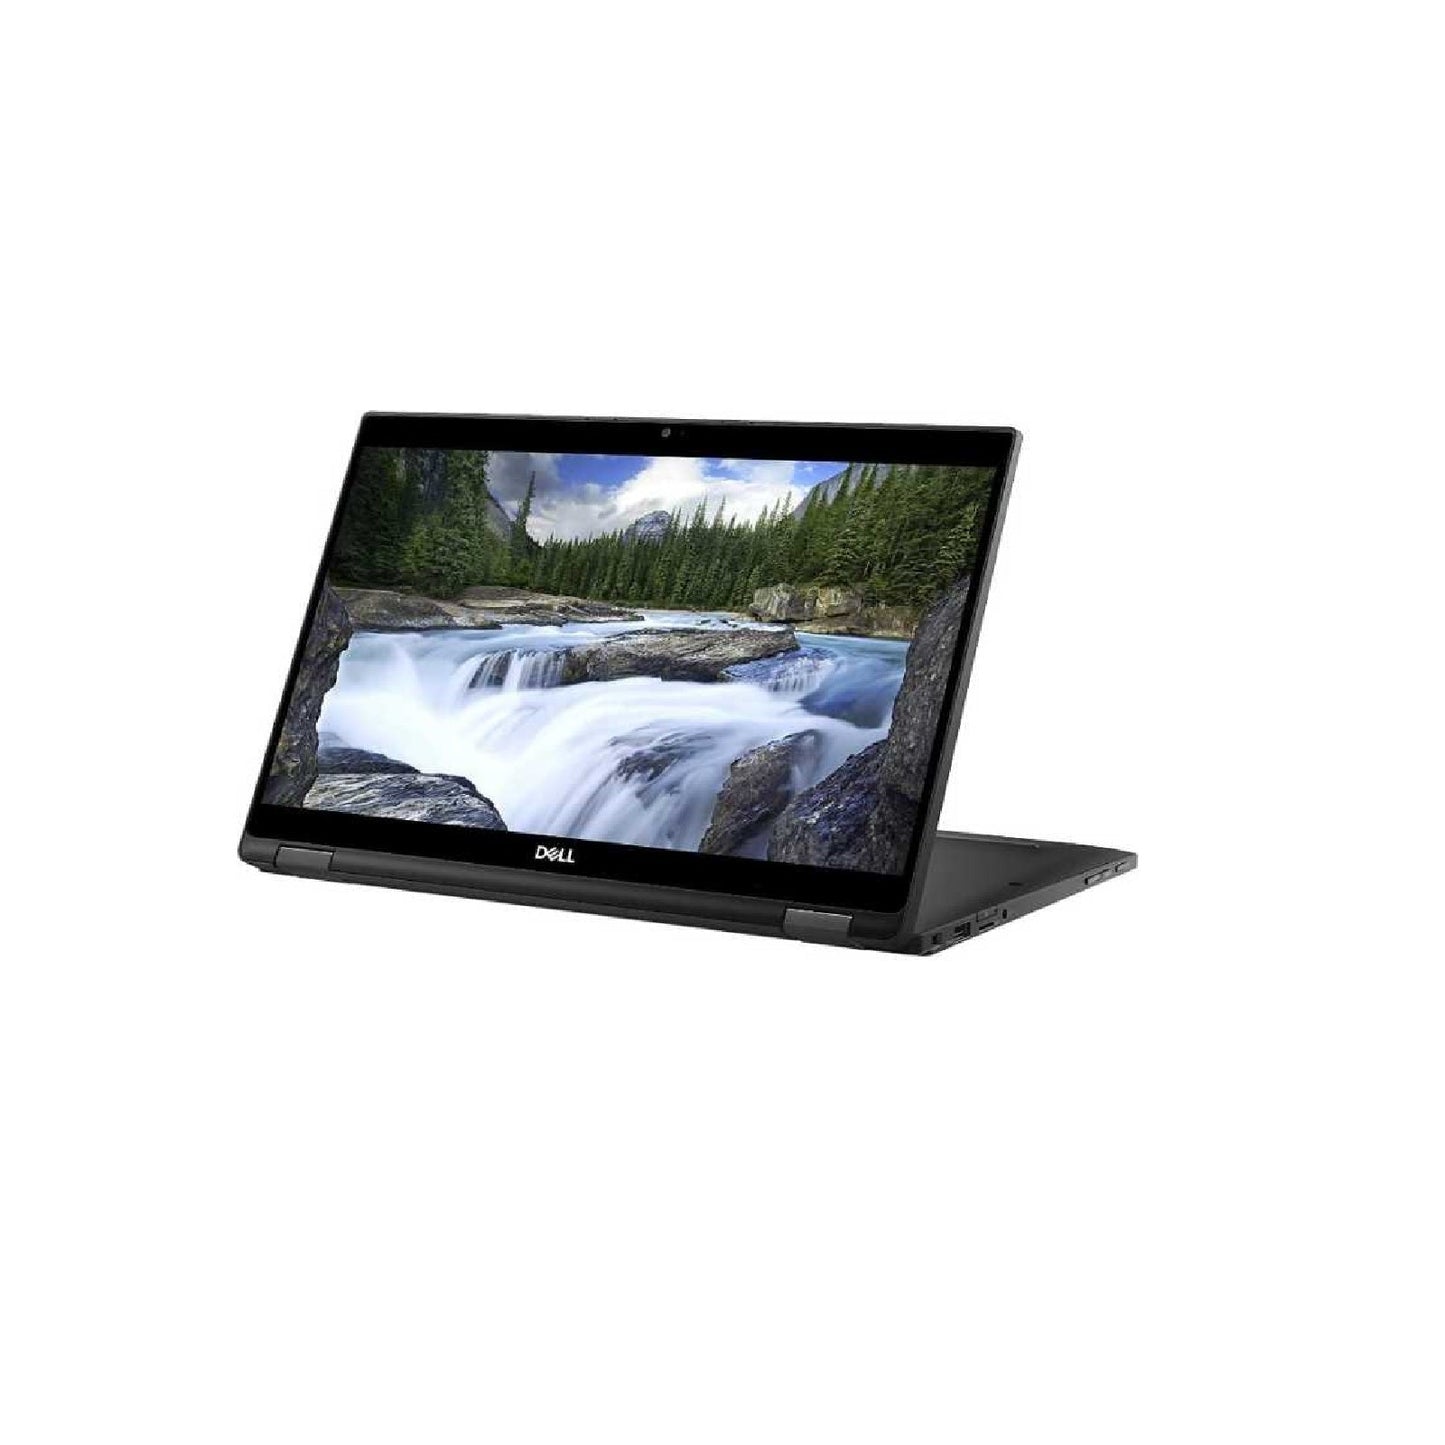 DELL LATITUE 7390 2-IN-1 - 13.3 Inch Touch Screen Laptop - Intel Core I5 Gen 8 Quad Core - 16 GB - Intel UHD graphics 620 - Windows 11 Original